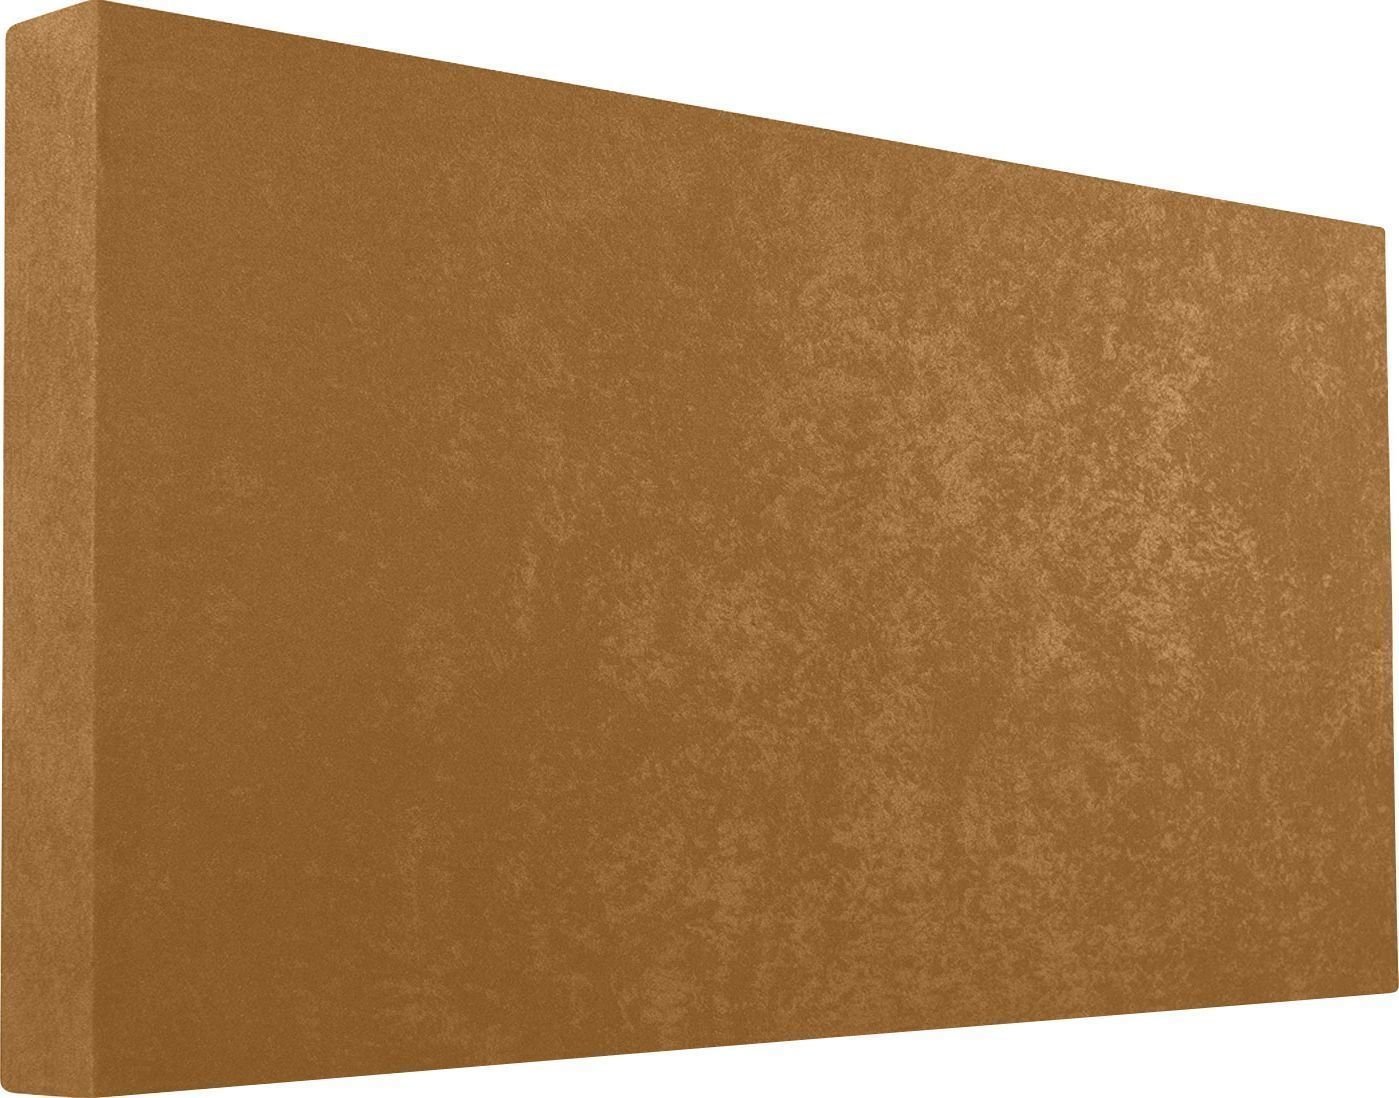 Absorbent Holzplatte Mega Acoustic Fiberstandard120 Light Brown